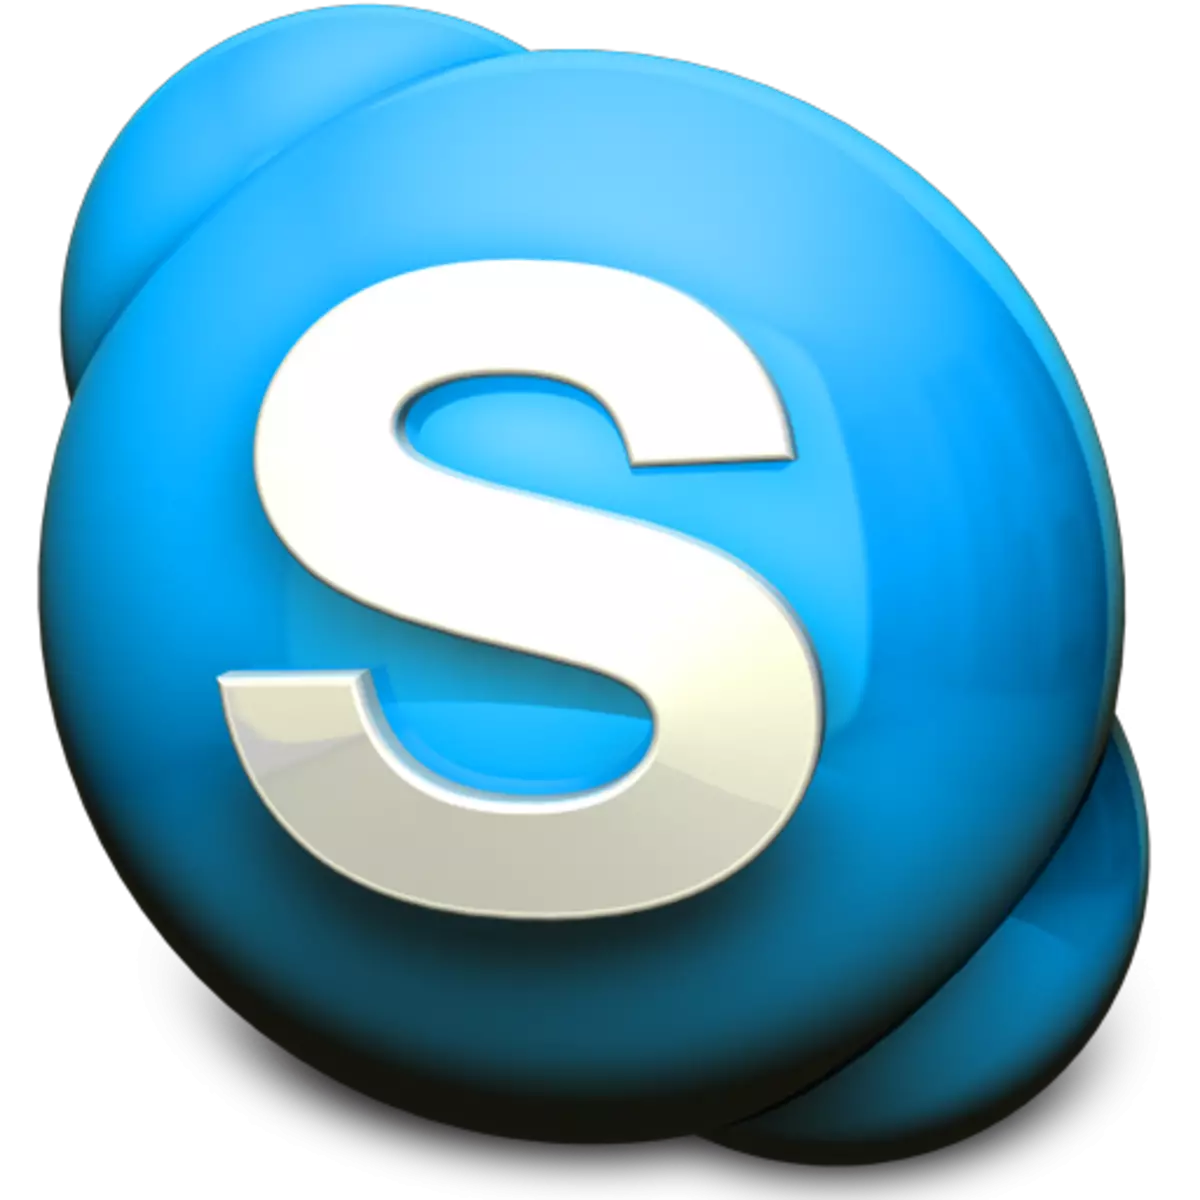 Pagwagtang ug pag-install sa Skype